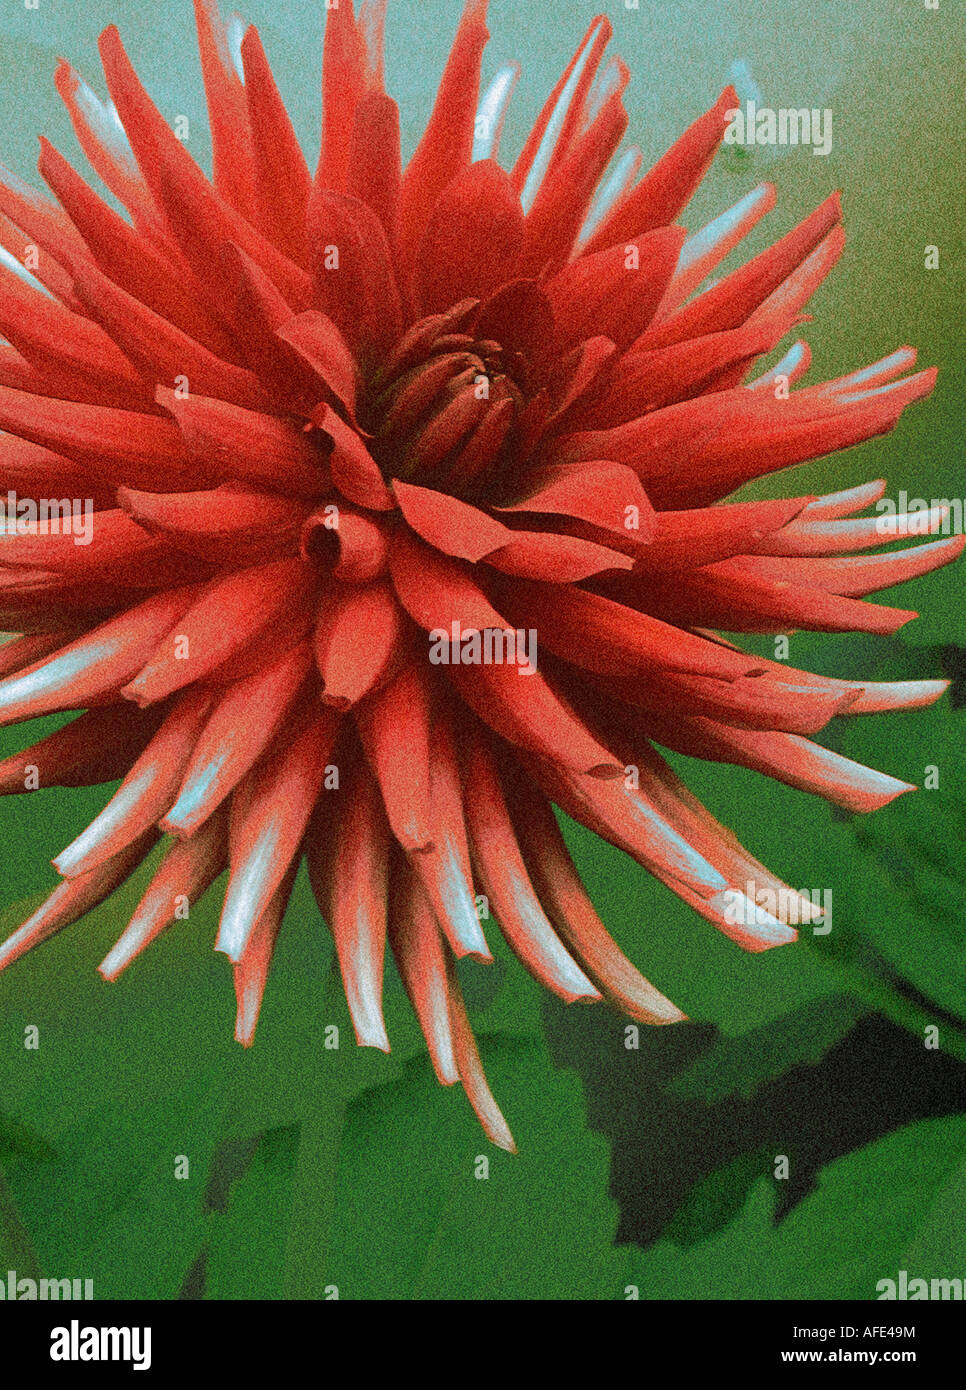 Photo-Illustration de 'rouge' Dahlia cactus fleur avec un fond vert Banque D'Images